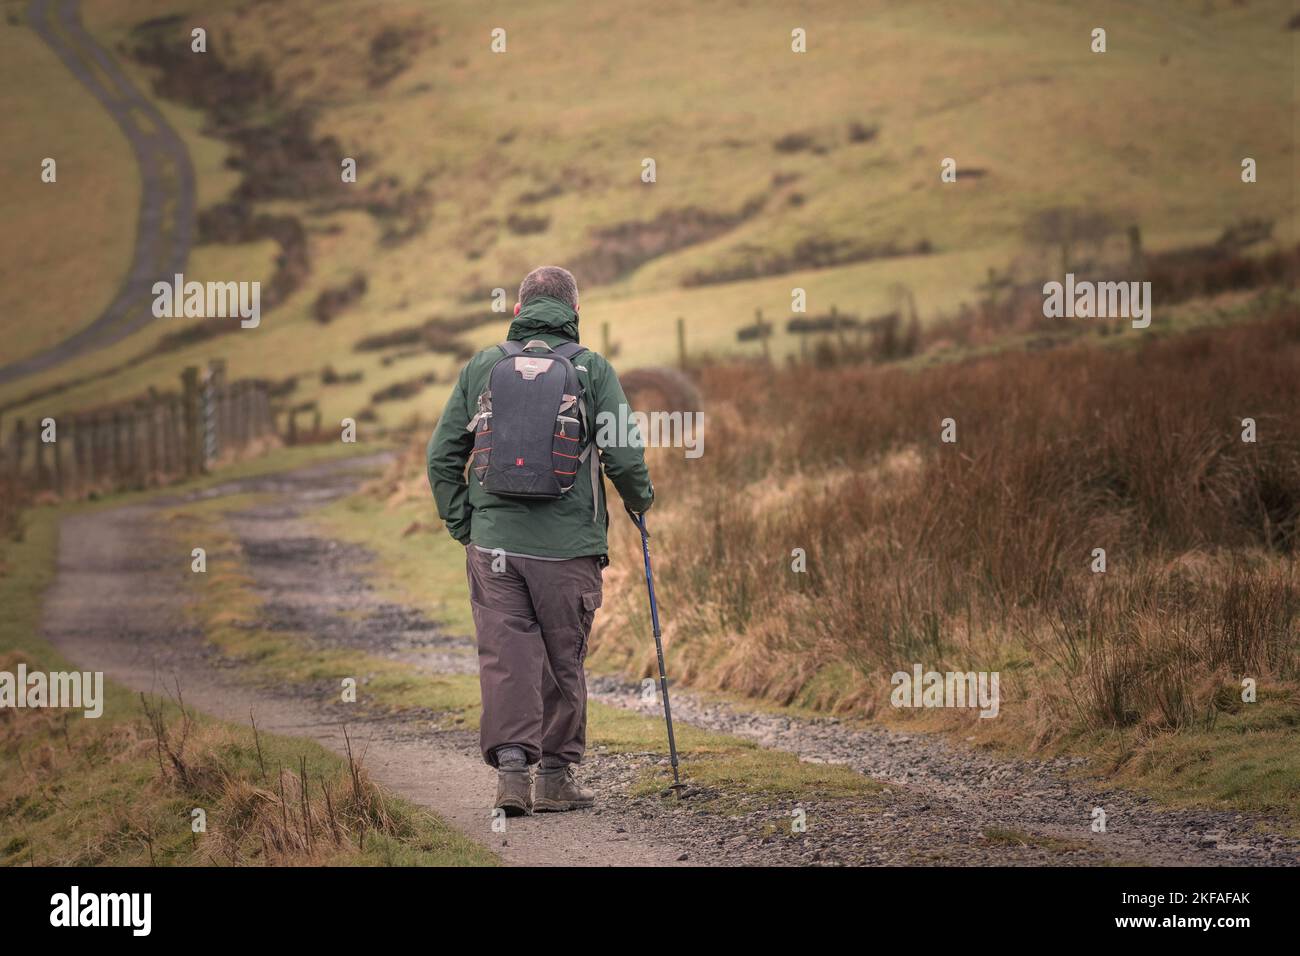 Gli anziani camminano e si esercitano in campagna. Camminando con bastone sul sentiero della brughiera. Foto Stock